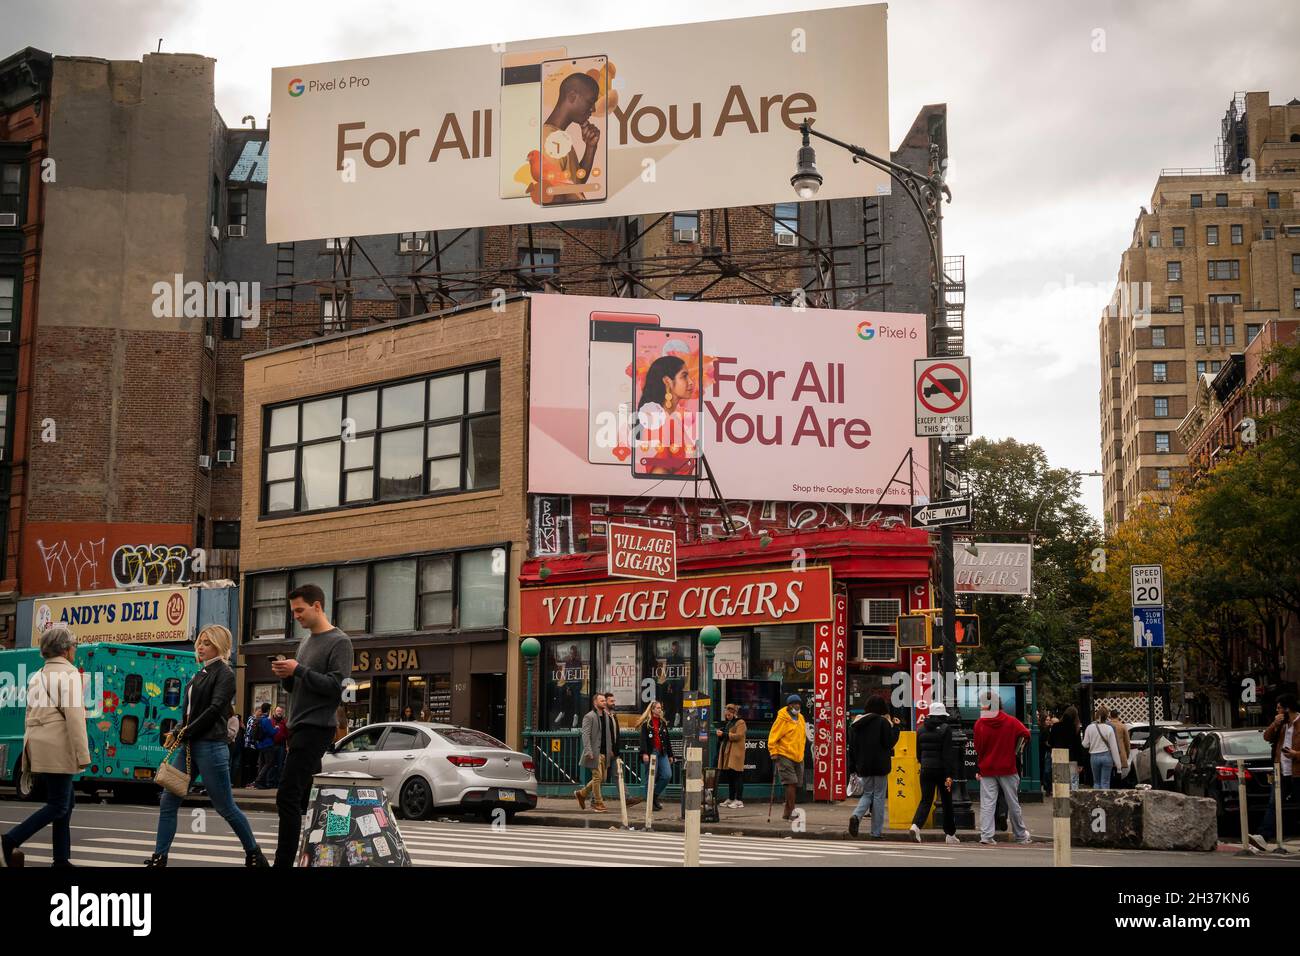 Panneaux publicitaires pour le smartphone Pixel Pro 6 de Google à Sheridan Square dans Greenwich Village à New York le dimanche 24 octobre 2021.(© Richard B. Levine) Banque D'Images